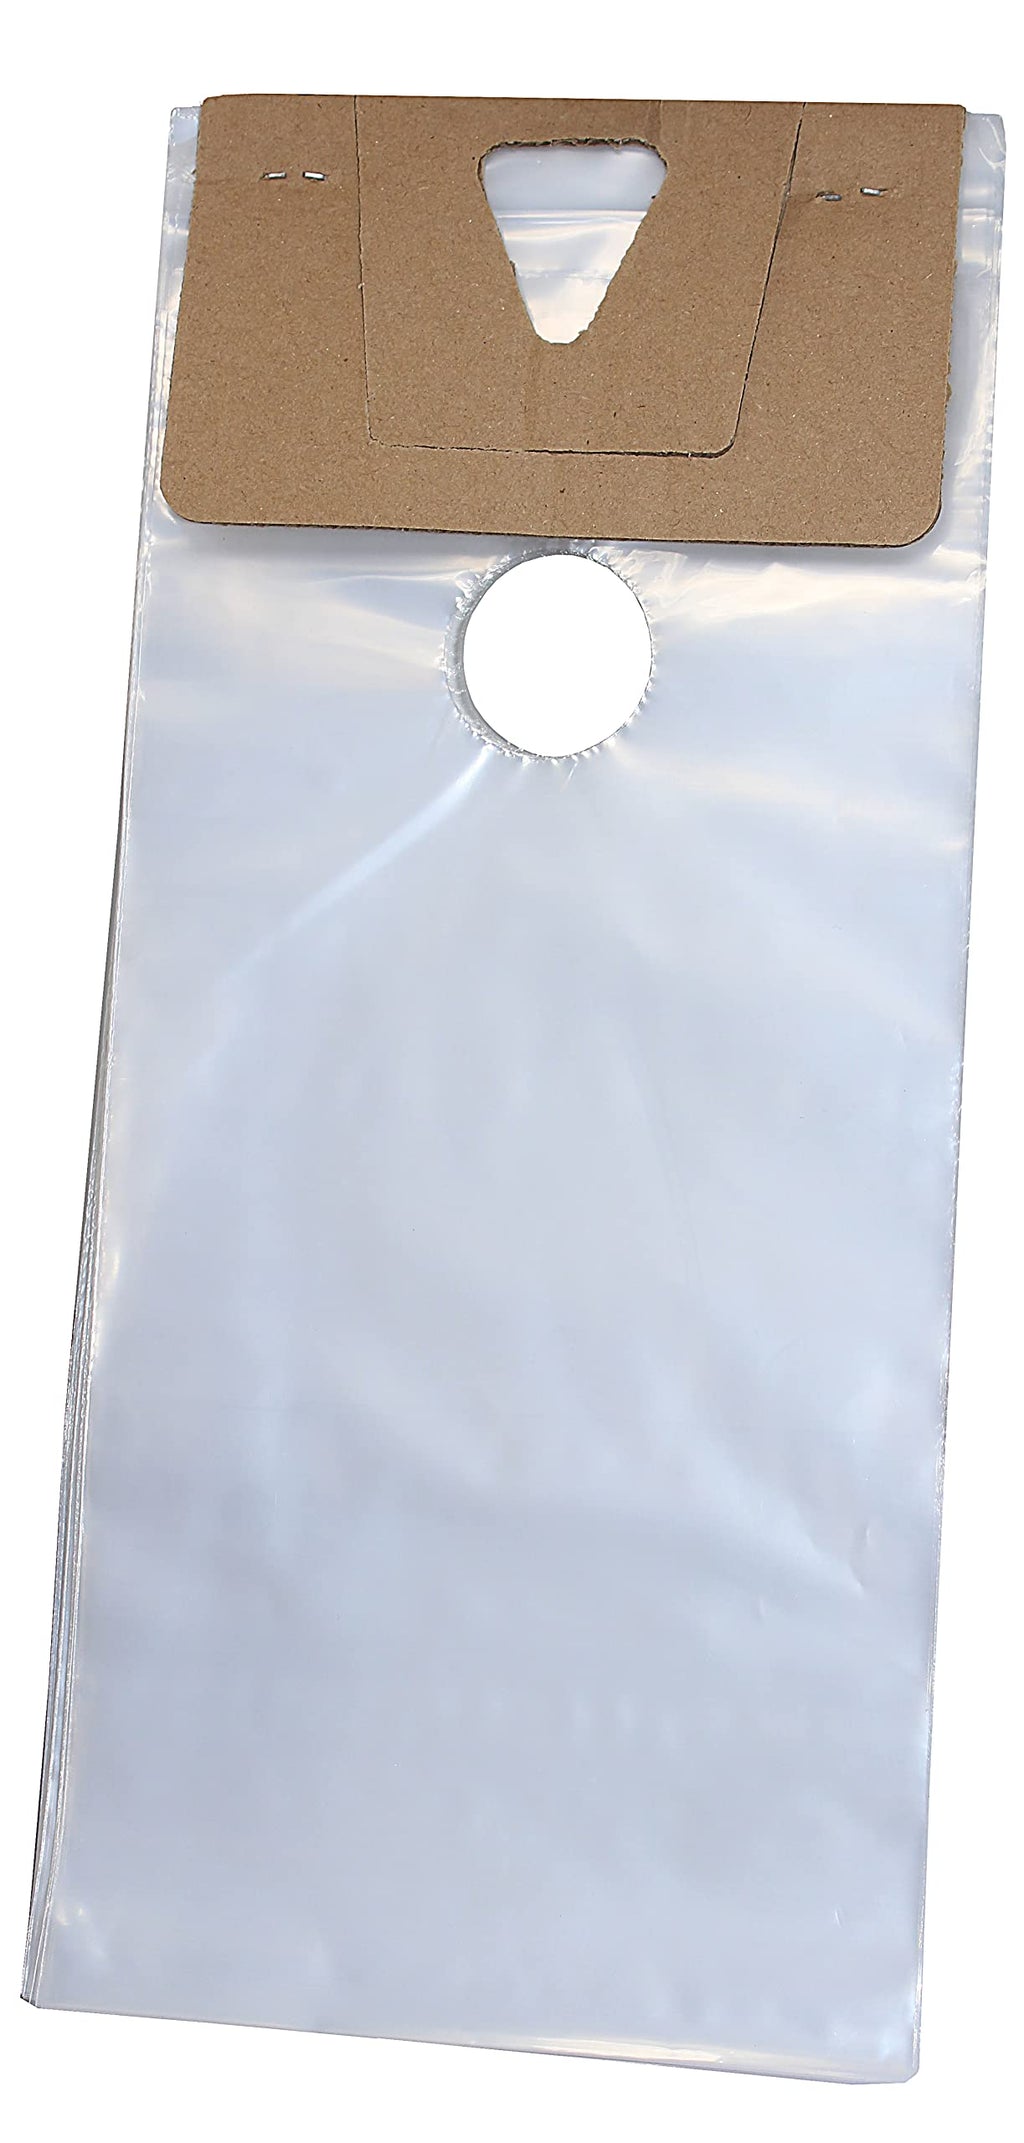  [AUSTRALIA] - Skywin 100 Plastic Door Hanger Bags 6 x 12 inches - Clear Door Hanger Bags Protects Flyers, Brochures, Notices, Printed Materials - Waterproof and Secure Door Knob Hanger for Outdoor Use (100)